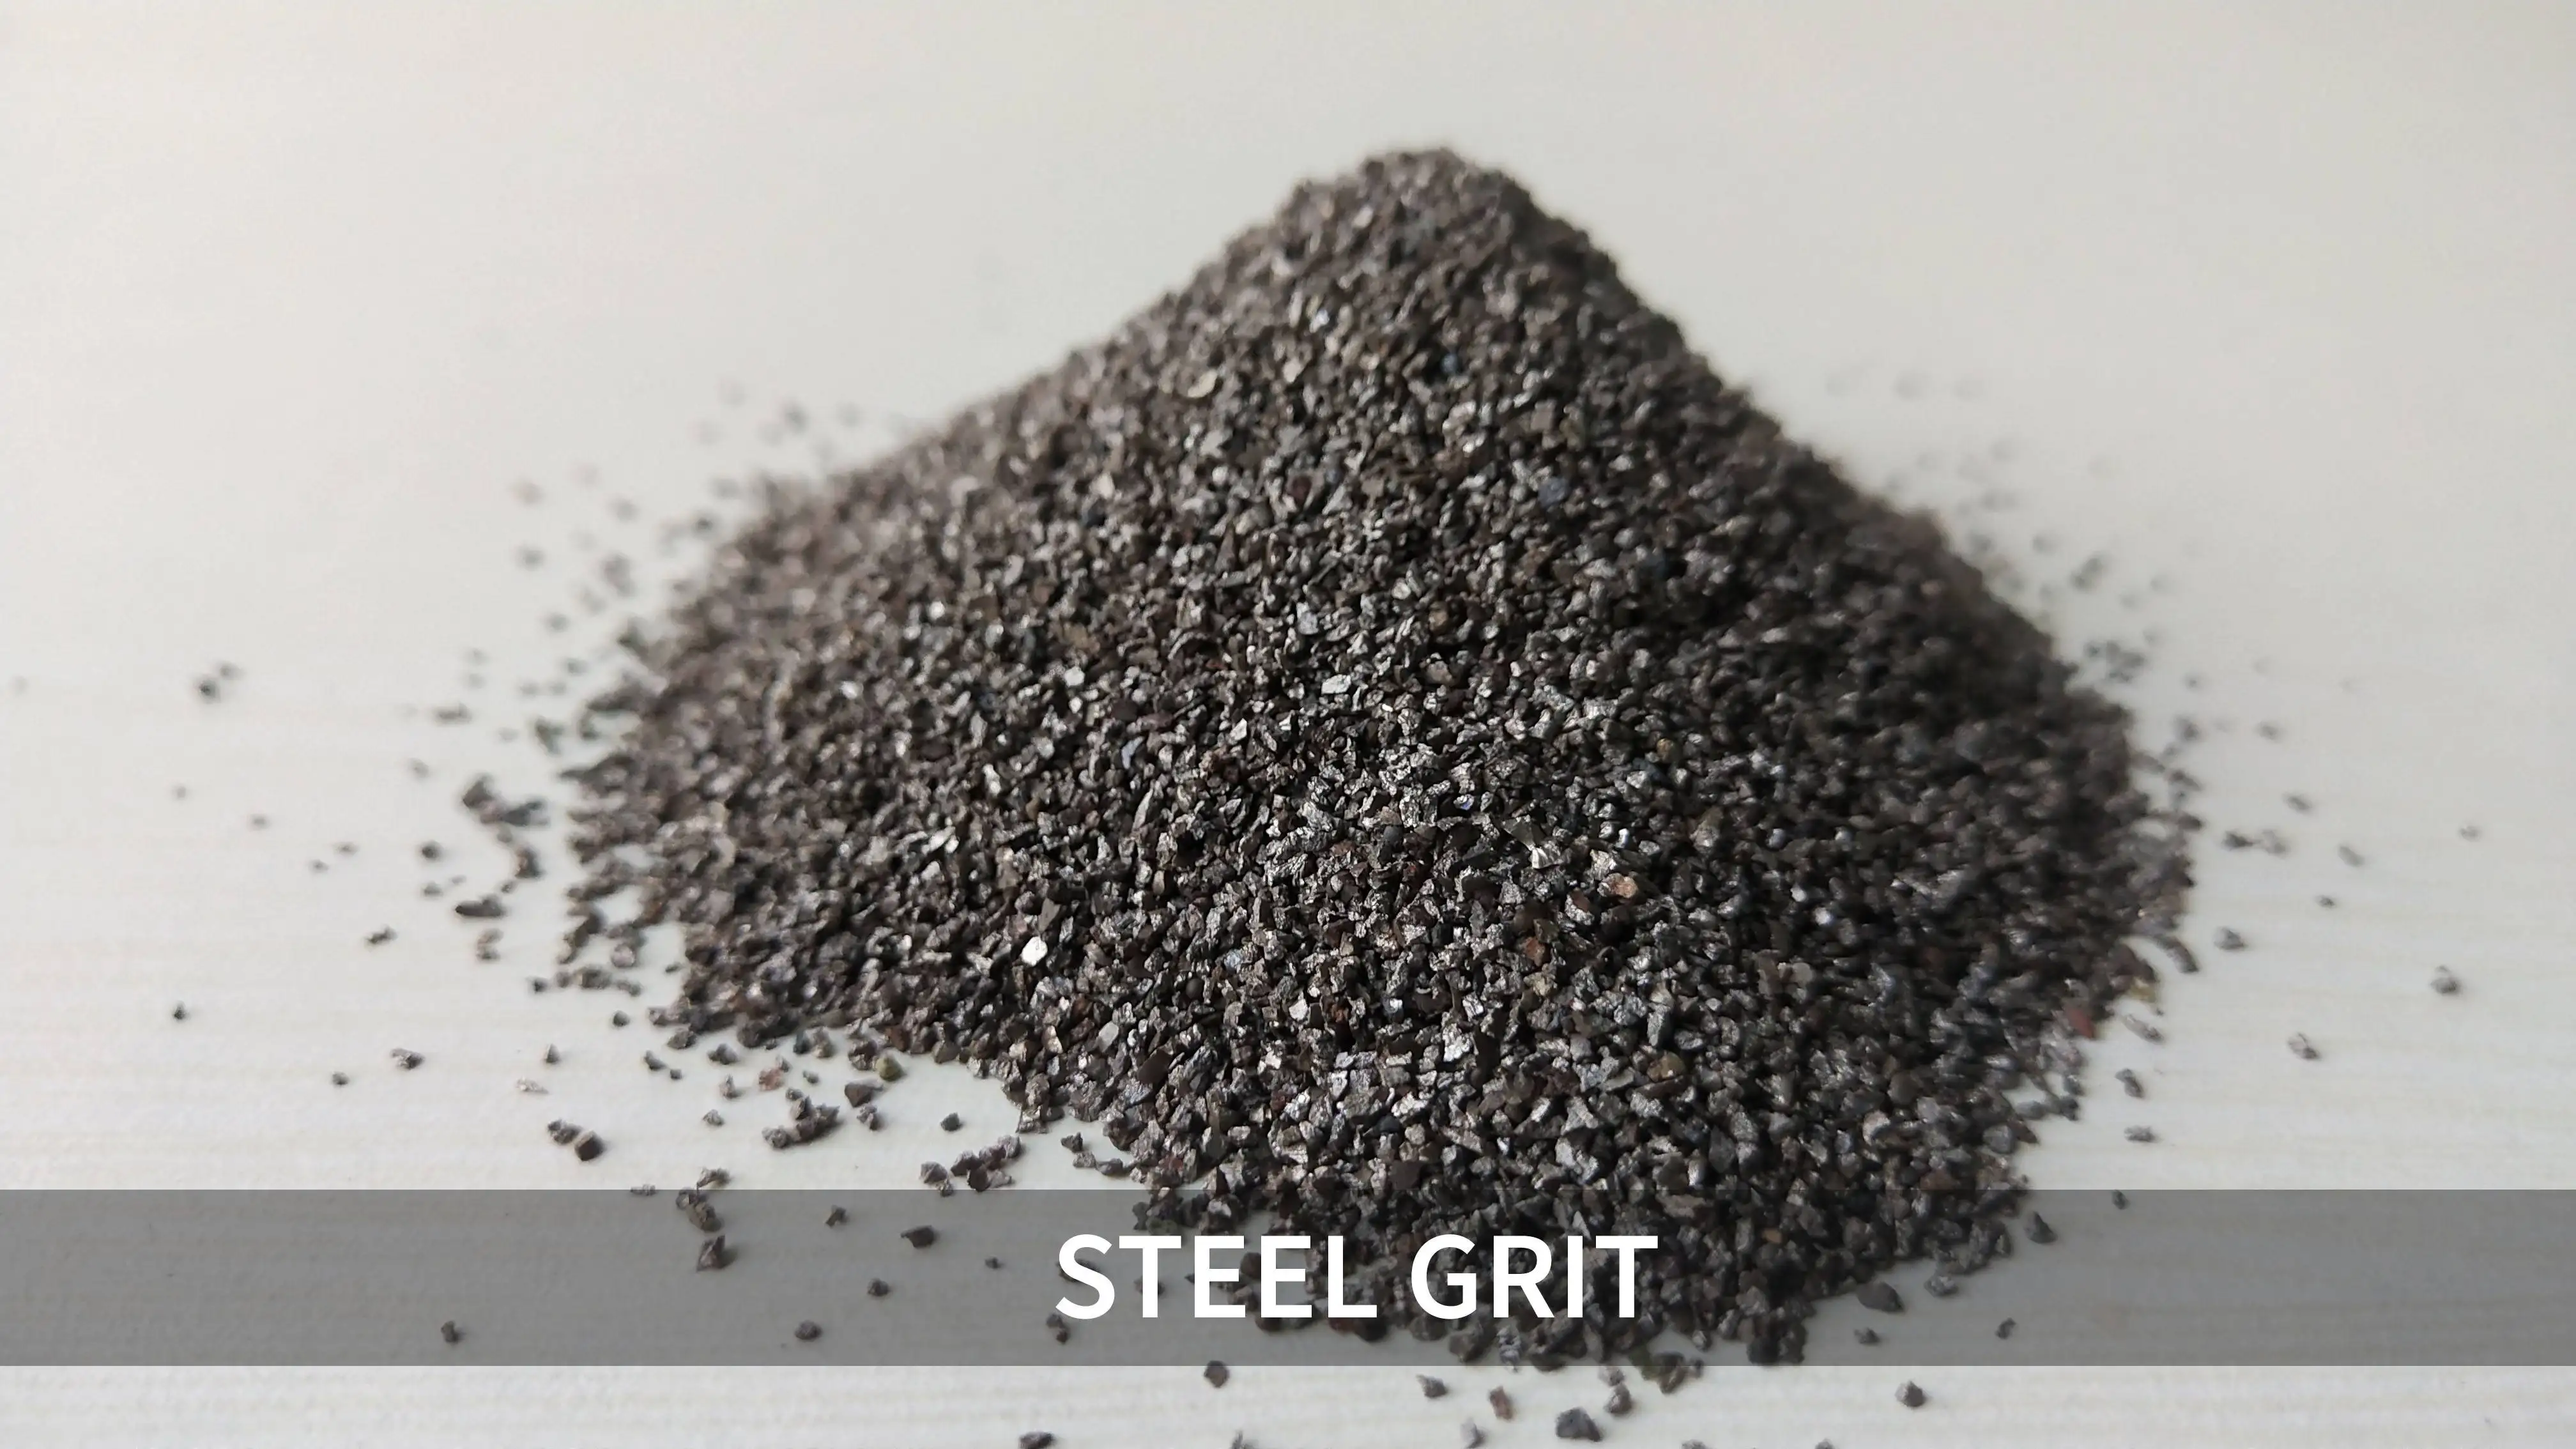 Steel Grit